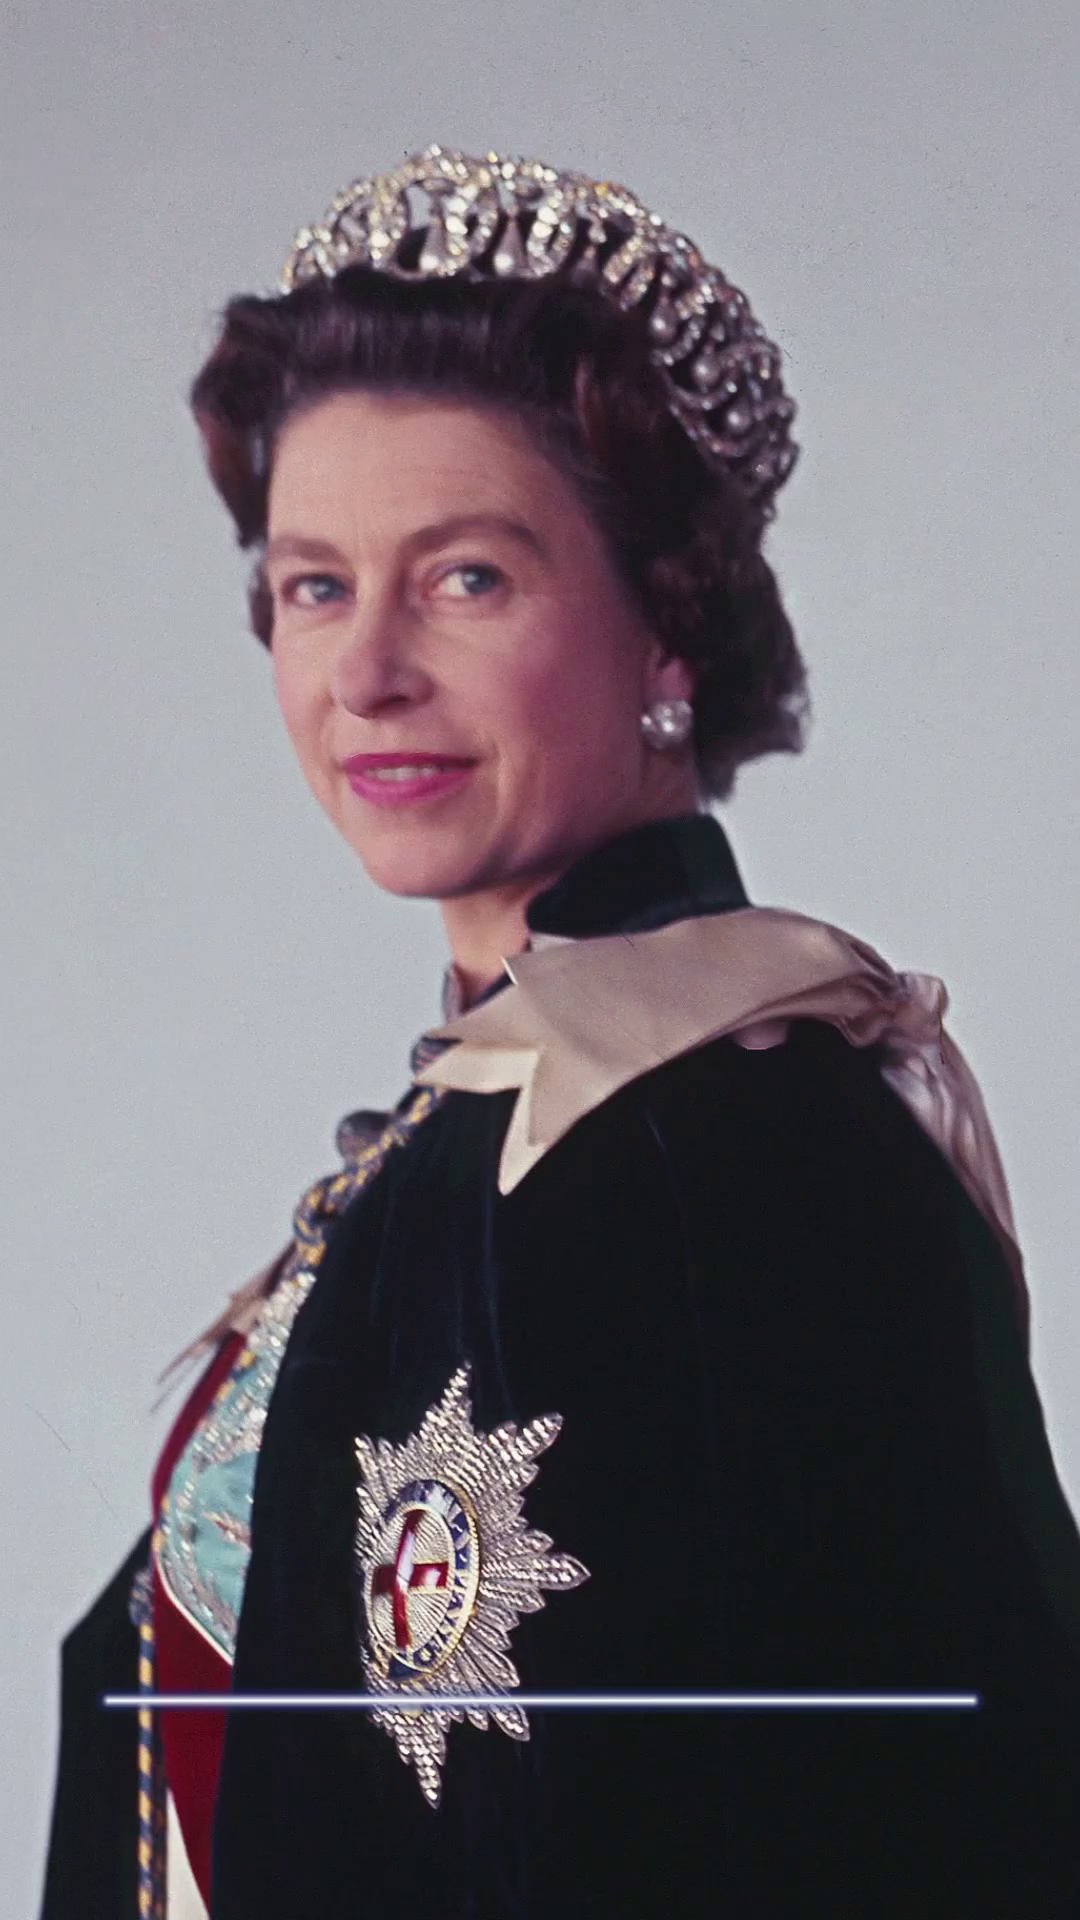 Královská rodina si připomíná skon královny Alžběty II.